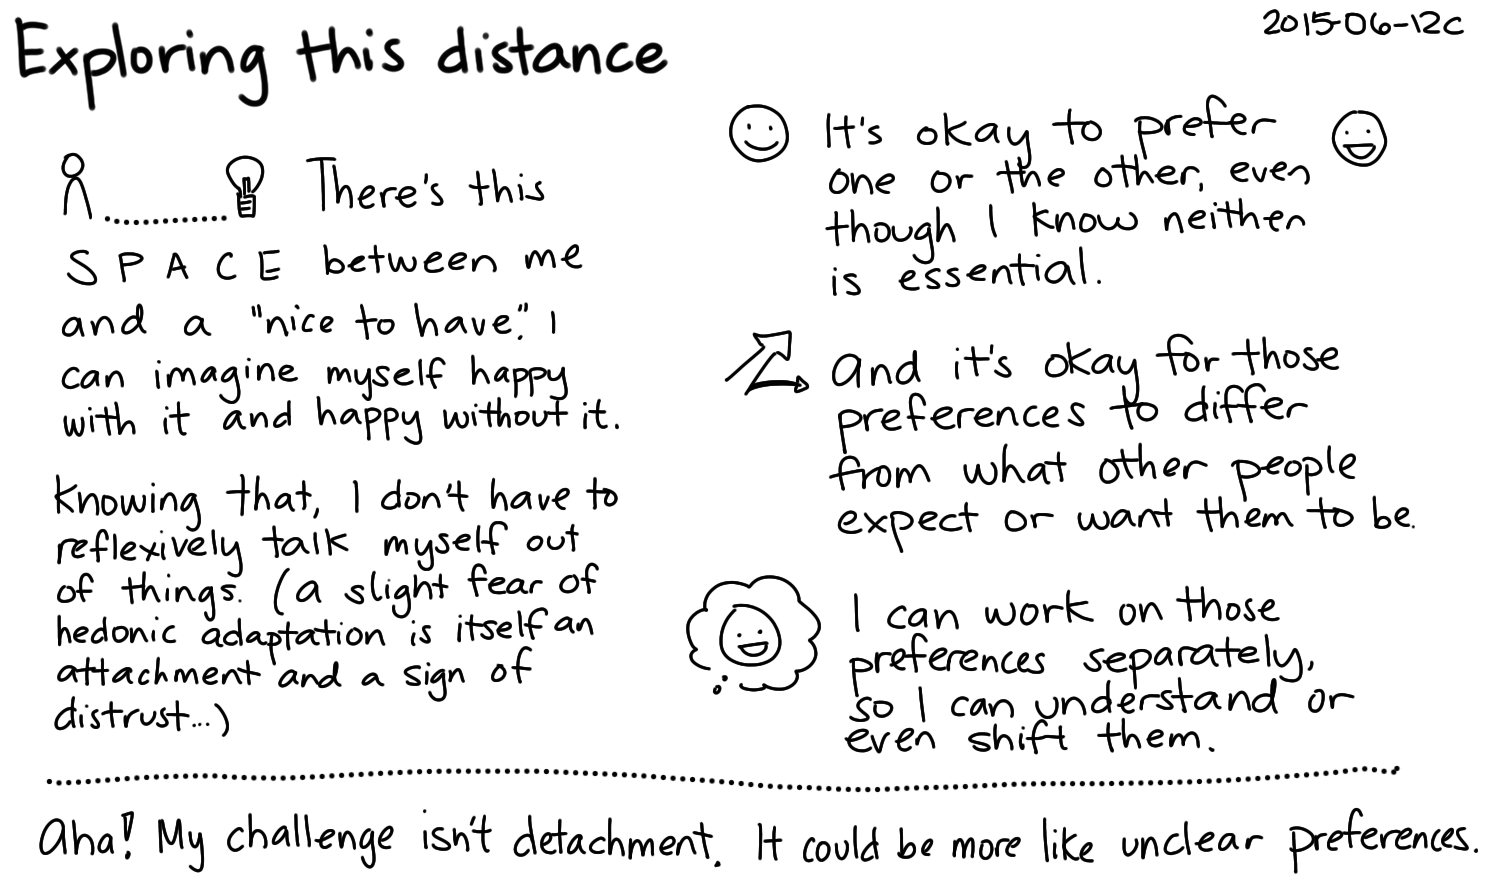 2015-06-12c Exploring this distance -- index card #stoicism #philosophy #detachment #desire.png